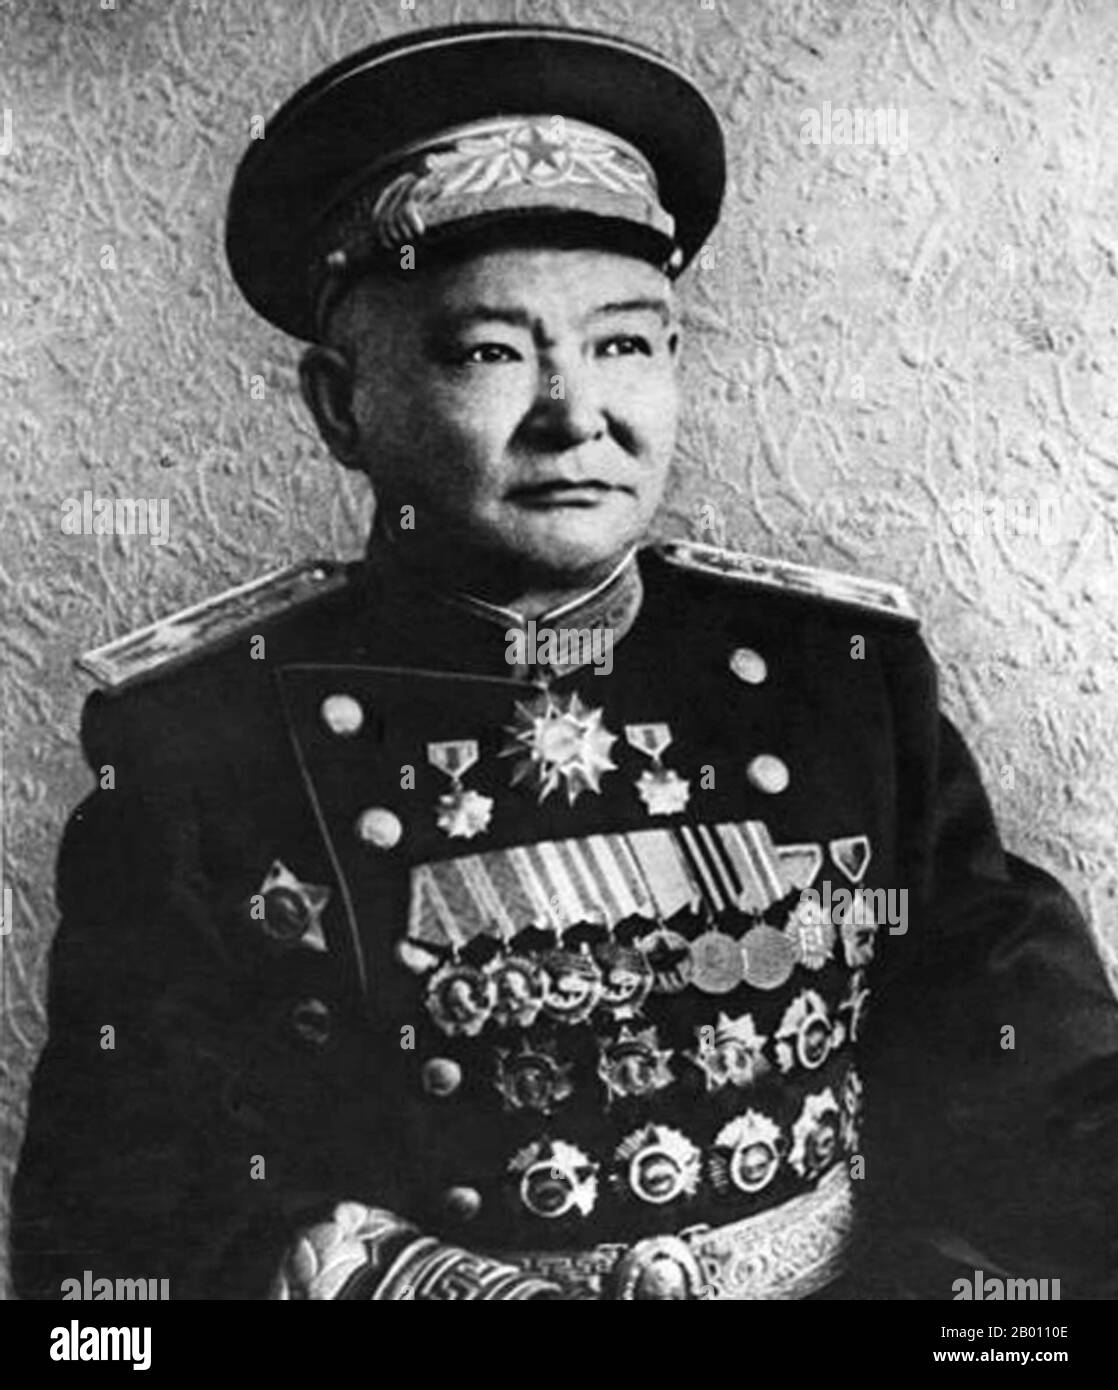 Mongolei: Khorloogiin Choibalsan (1895-1952) kommunistischer Führer der Mongolischen Volksrepublik, c,1930s. Choibalsan war ursprünglich als lamaistischer Mönch ausgebildet worden. Er nahm Kontakt mit russischen Revolutionären auf, als er nach Sibirien reiste. 1919 gründete er seine erste revolutionäre Organisation und schloss sich 1921 mit Damdin Sukhbaatar der mongolischen Volkspartei an. Nachdem die Streitkräfte der mongolischen und sowjetischen Roten Armee 1921 in Urga einmarschierten und eine prosowjetische Regierung gründeten, wurde Choibalsan stellvertretender Kriegsminister und kam, um die Führung seines Landes zu dominieren und seine Rivalen zu säubern. Stockfoto